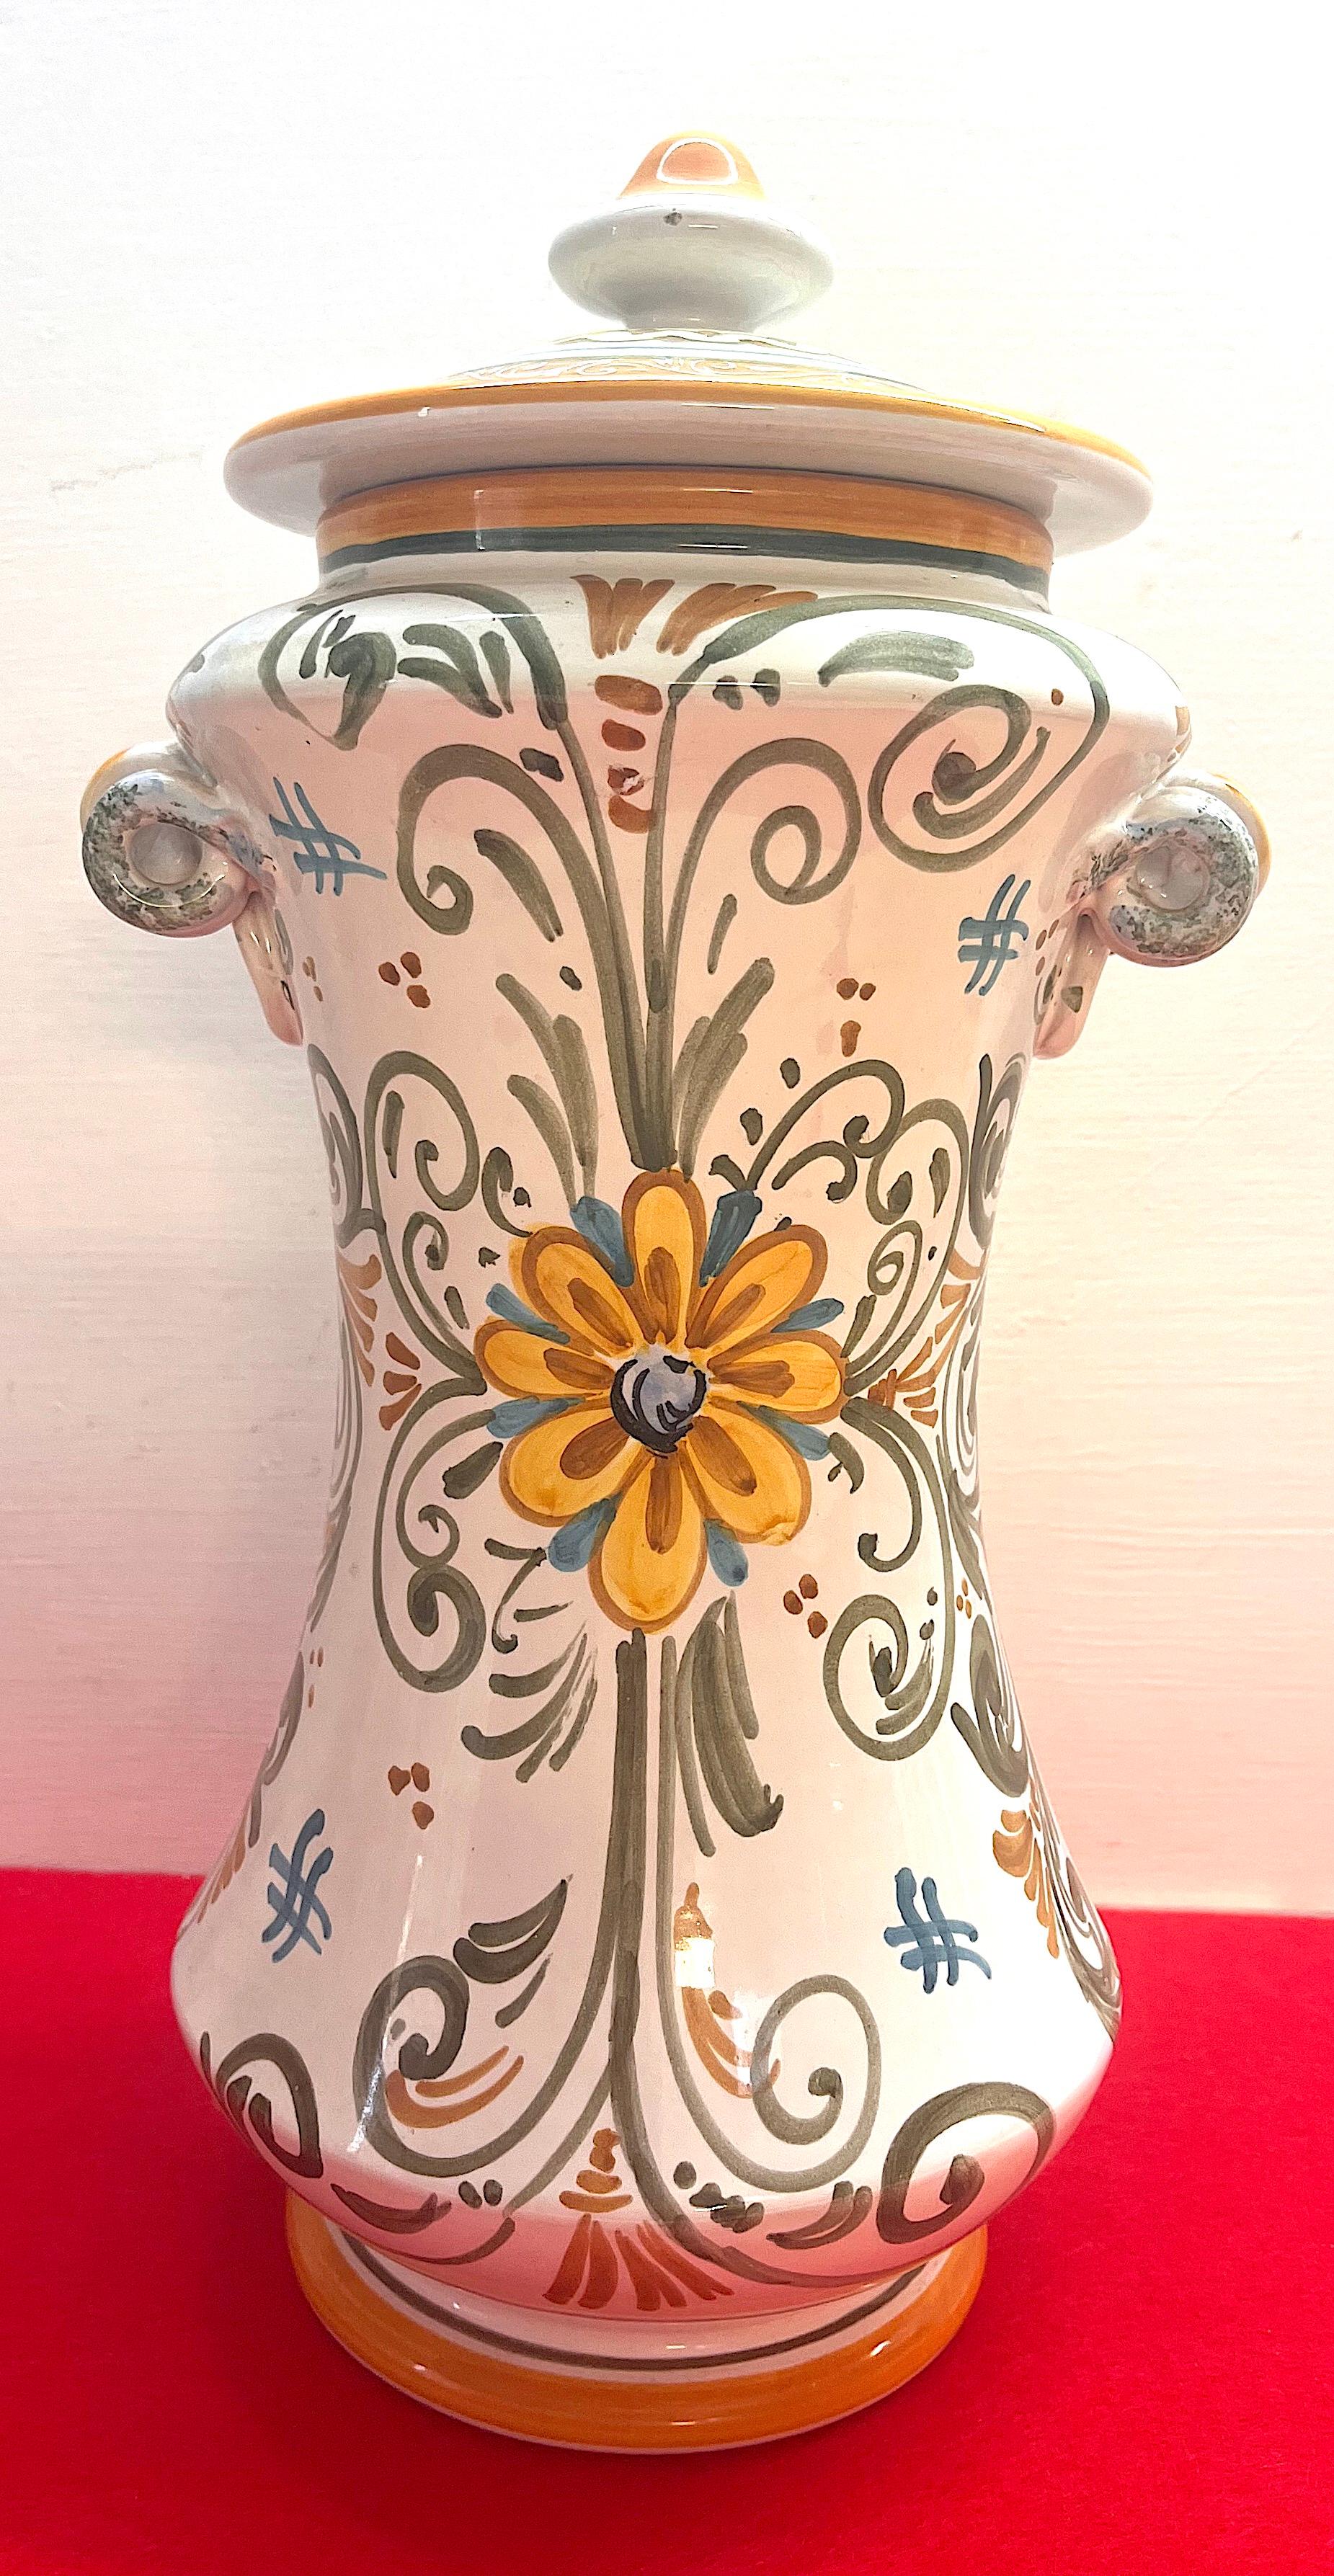 Fired Castelli ceramic vases For Sale